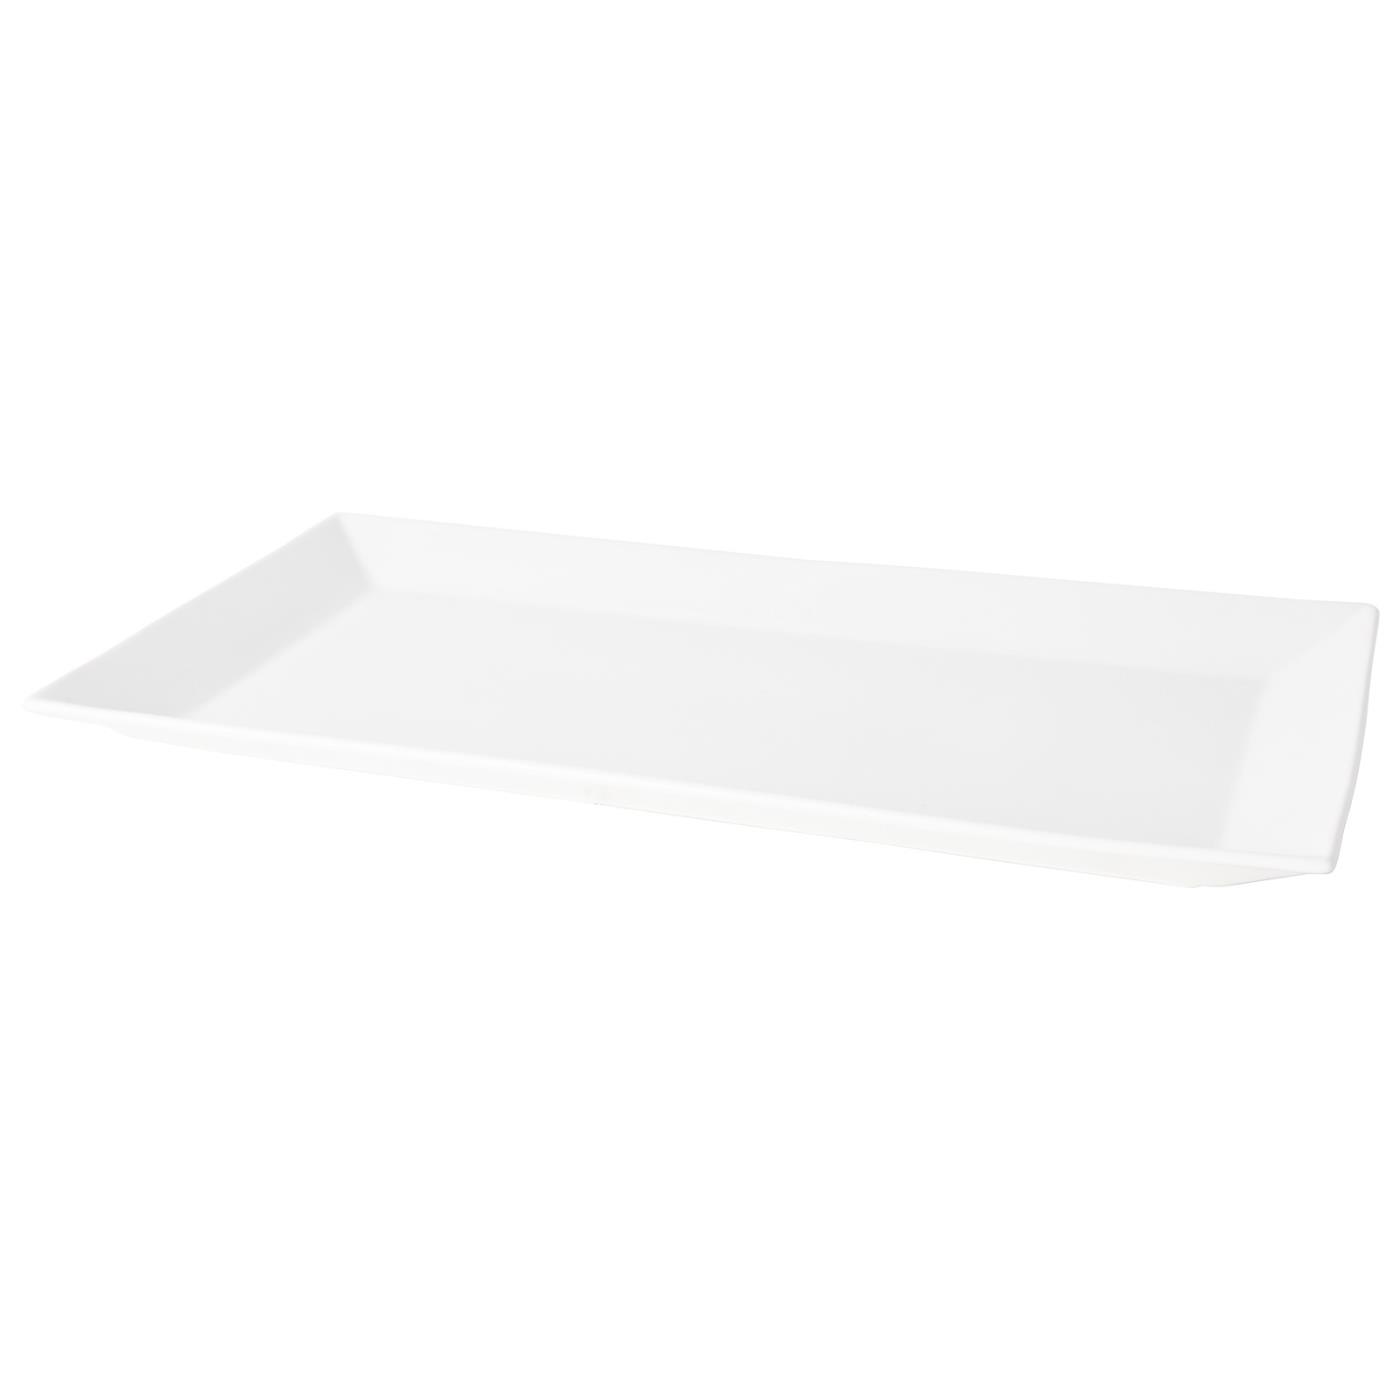 White Ceramic Rectangular Platter - 20" x 10.5"